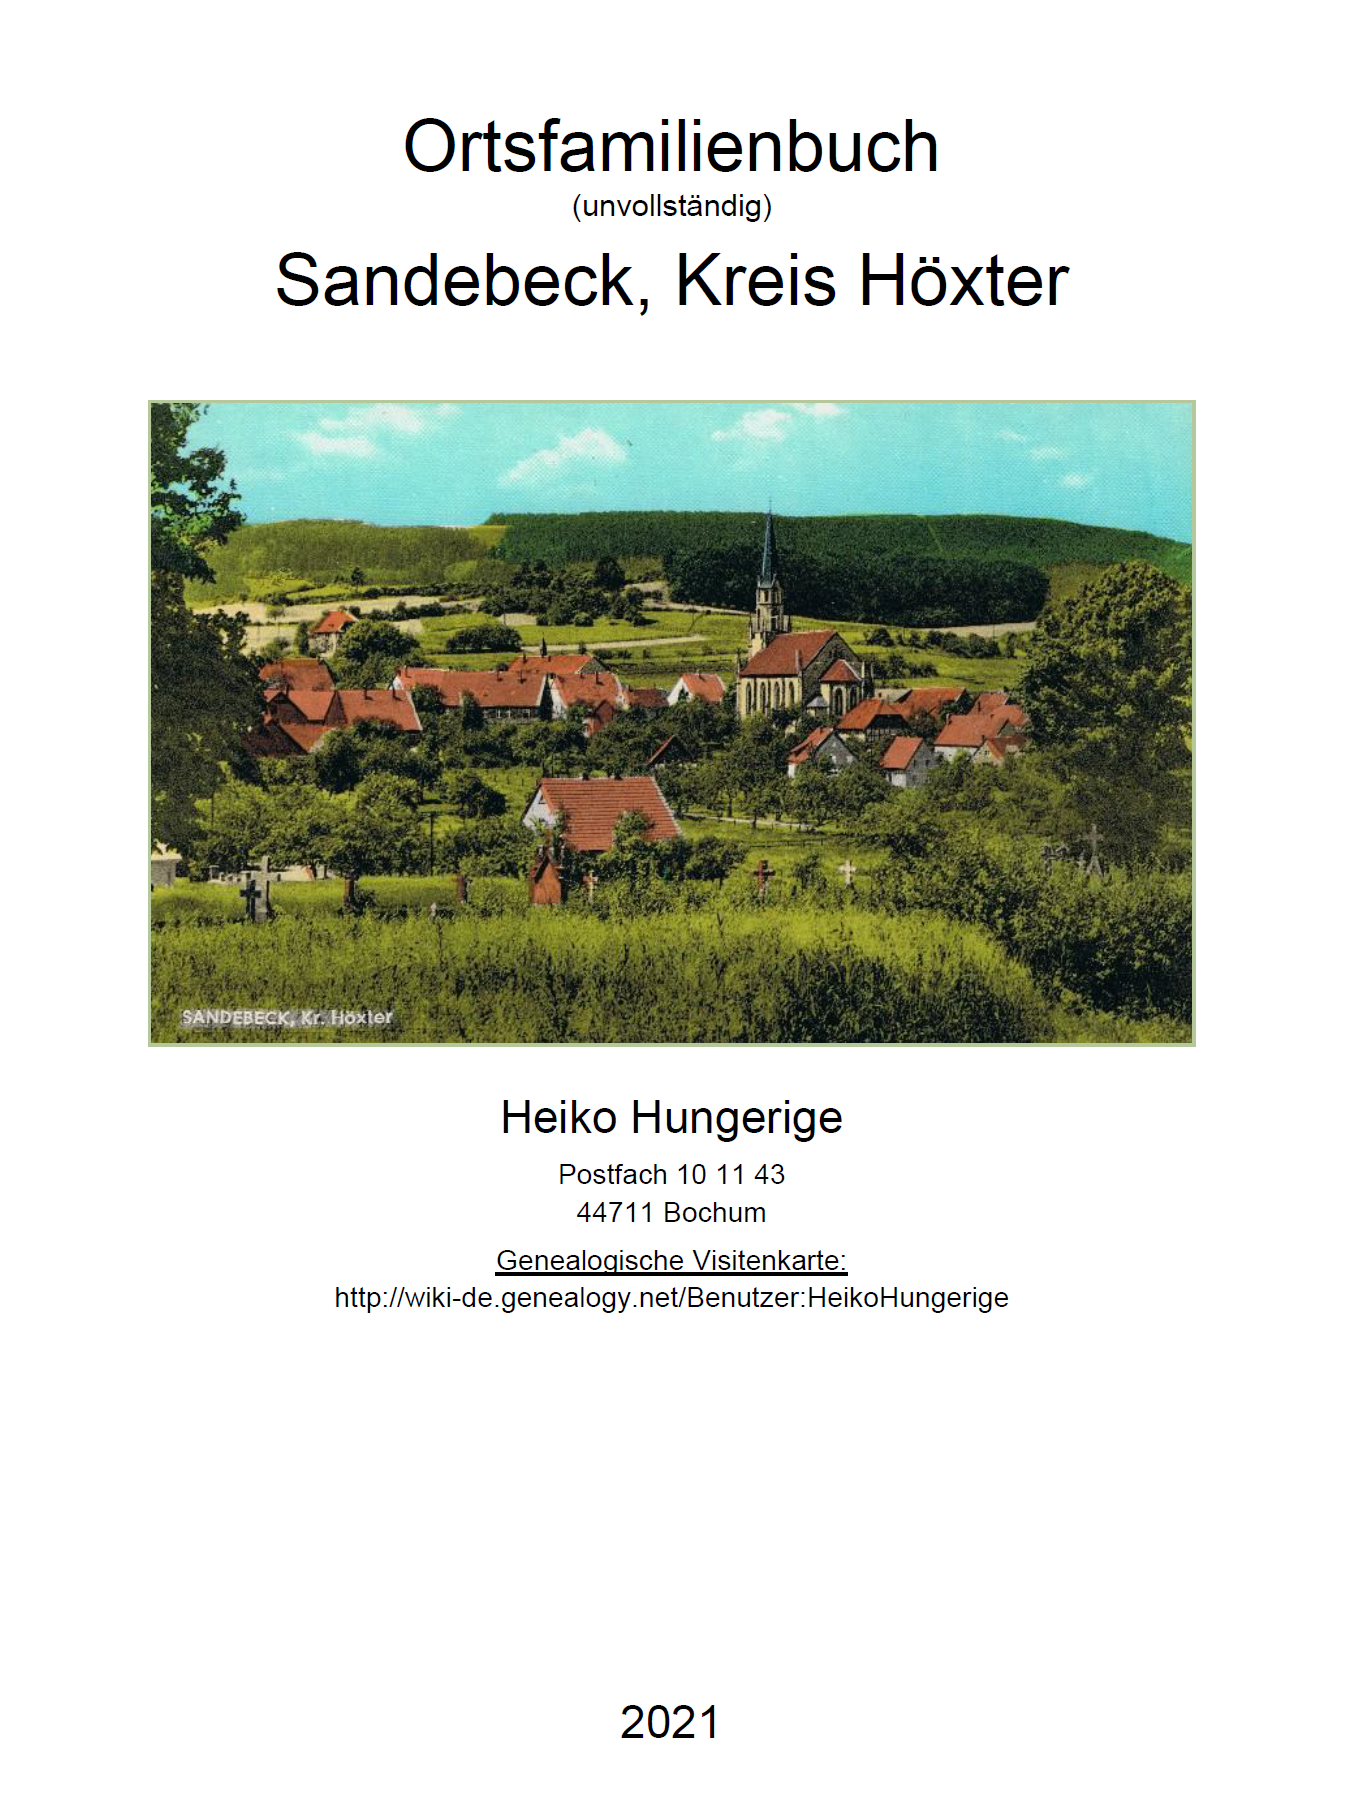 Hungerige (2021), OFB Sandebeck (unvollständig)